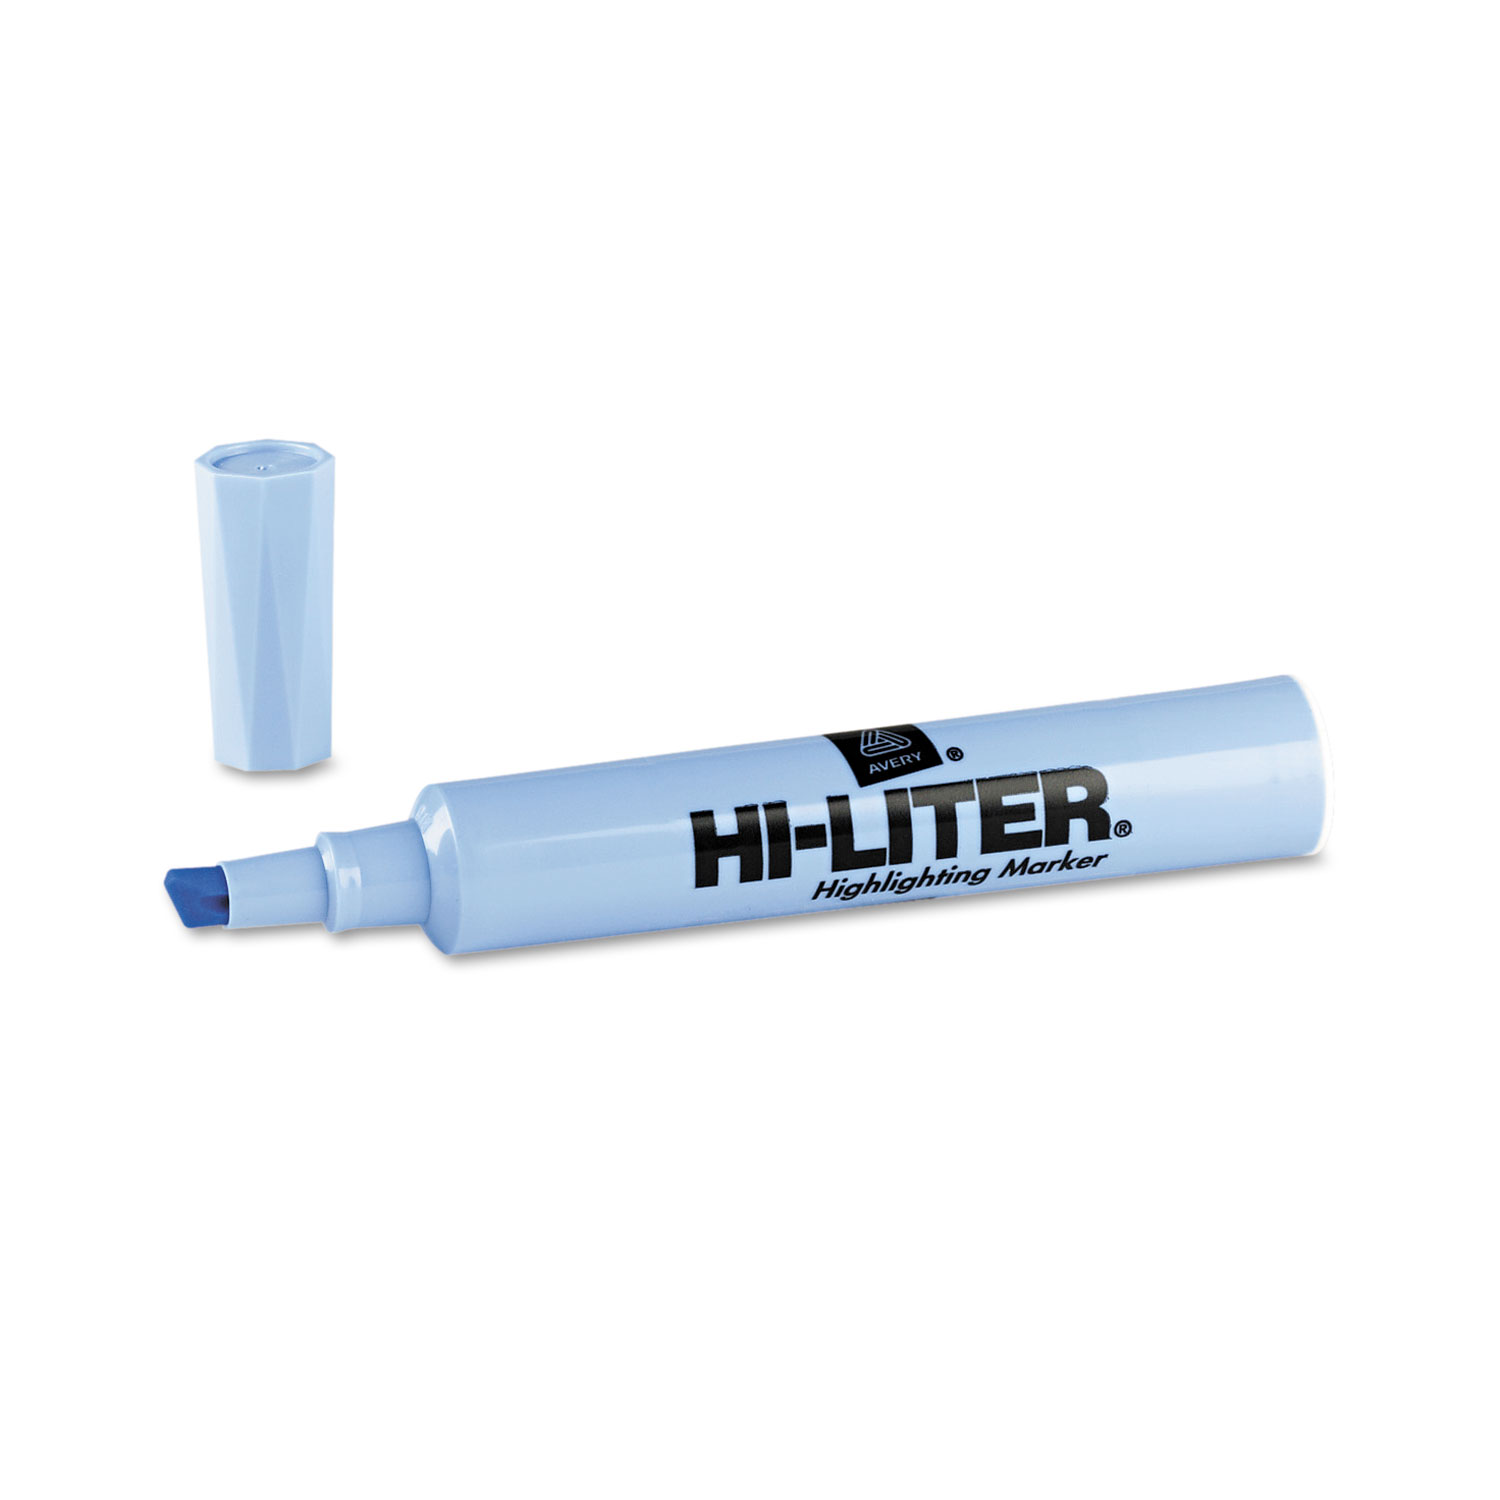 HI-LITER Desk-Style Highlighter, Chisel Tip, Light Blue Ink, Dozen